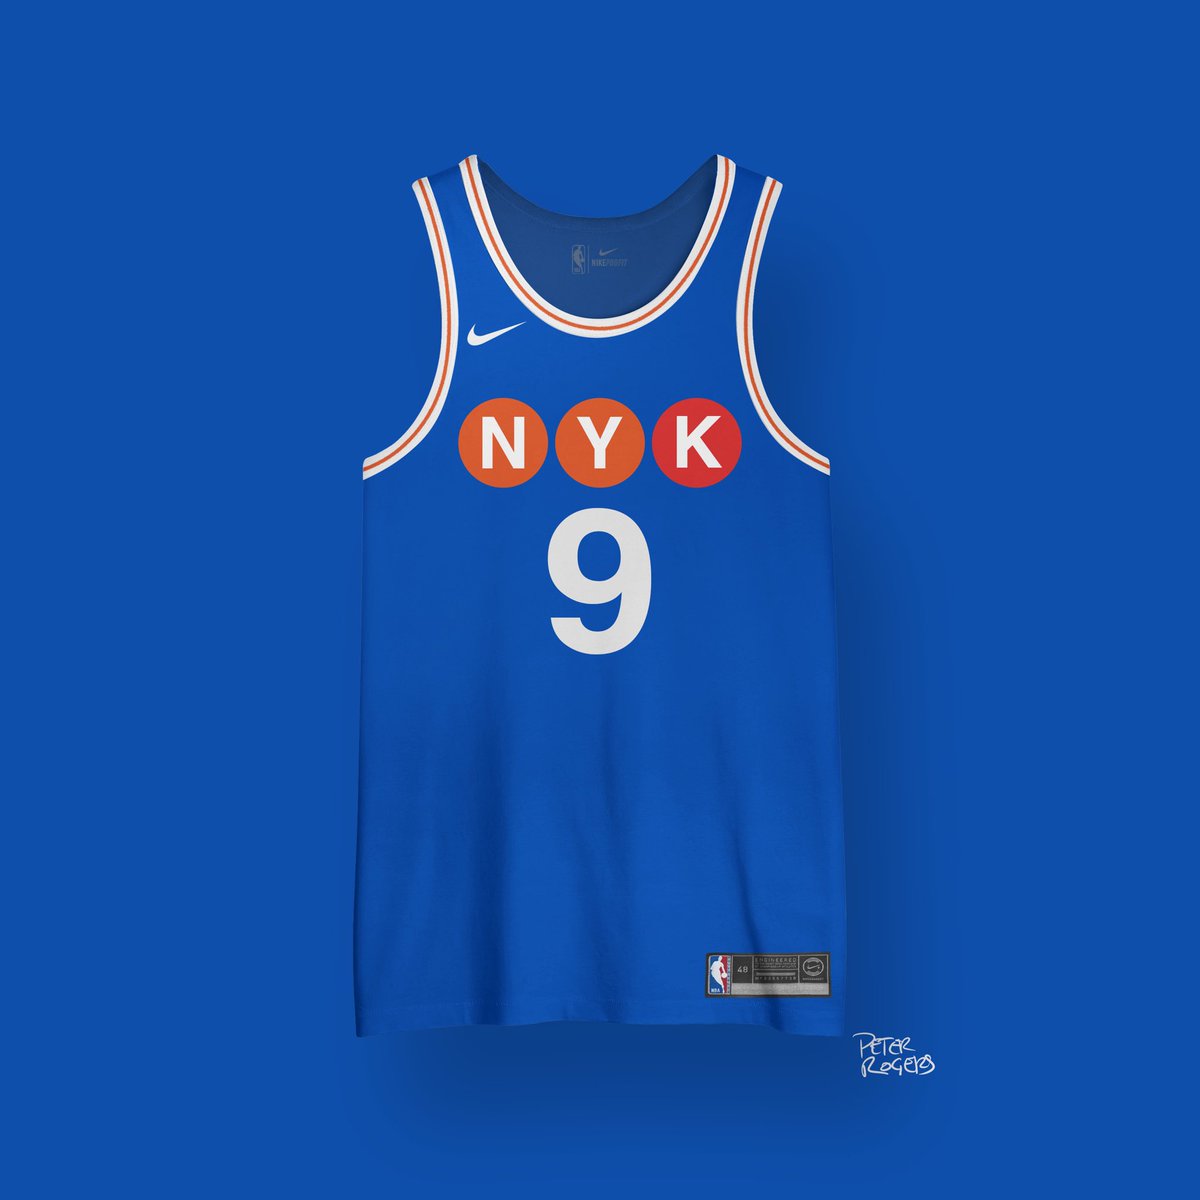 NEW YORK KNICKSgiving the new york subway some love  @ptknicksblog |  #newyorkforever  